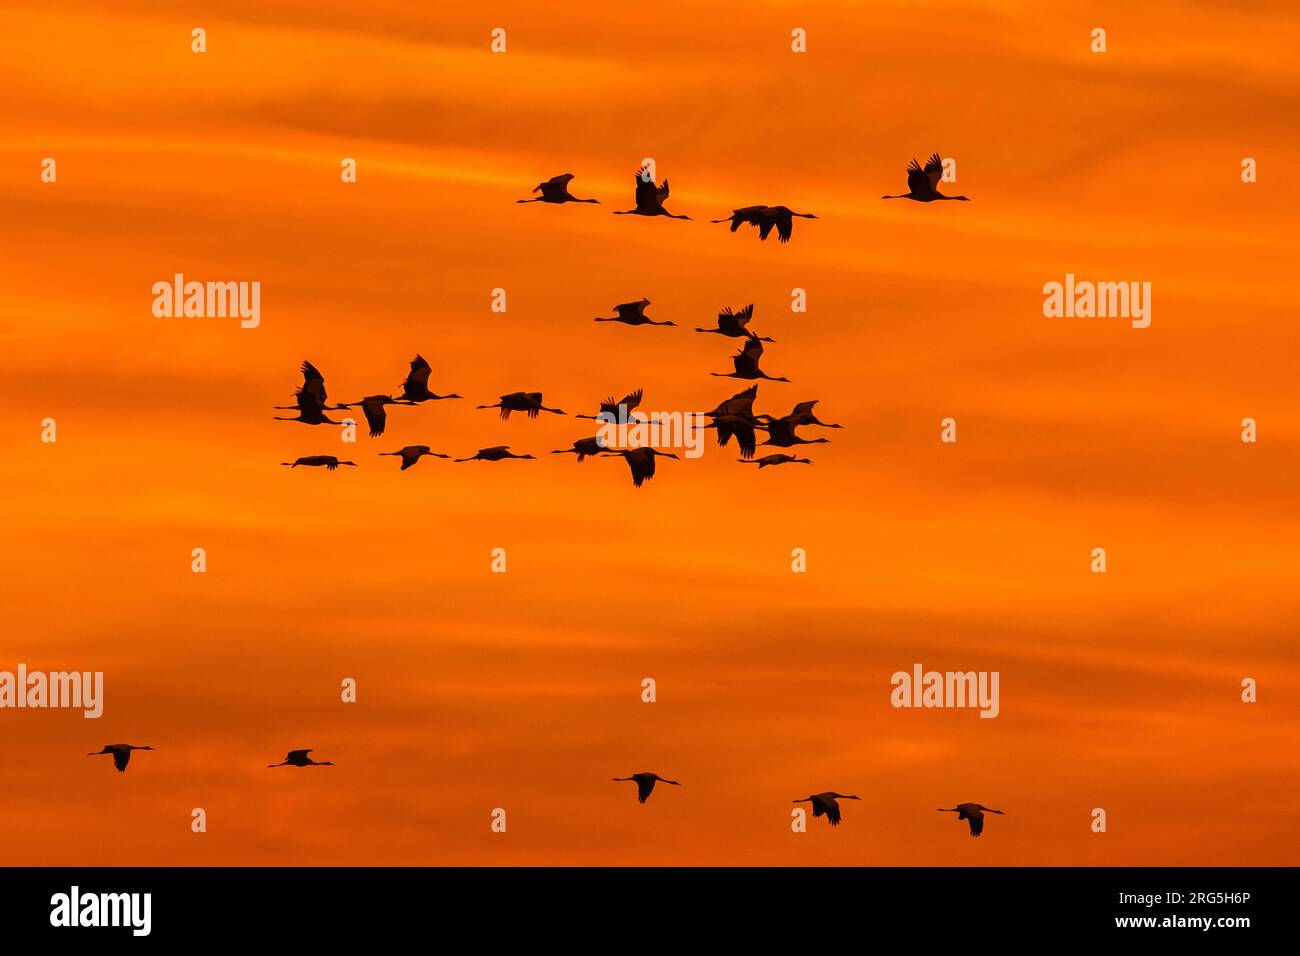 Wanderherde von gewöhnlichen Kranen / Eurasische Kraniche (Grus grus) im Flug Silhouetted gegen orangefarbenen Sonnenuntergang Himmel während der Wanderung im Herbst / Herbst Stockfoto